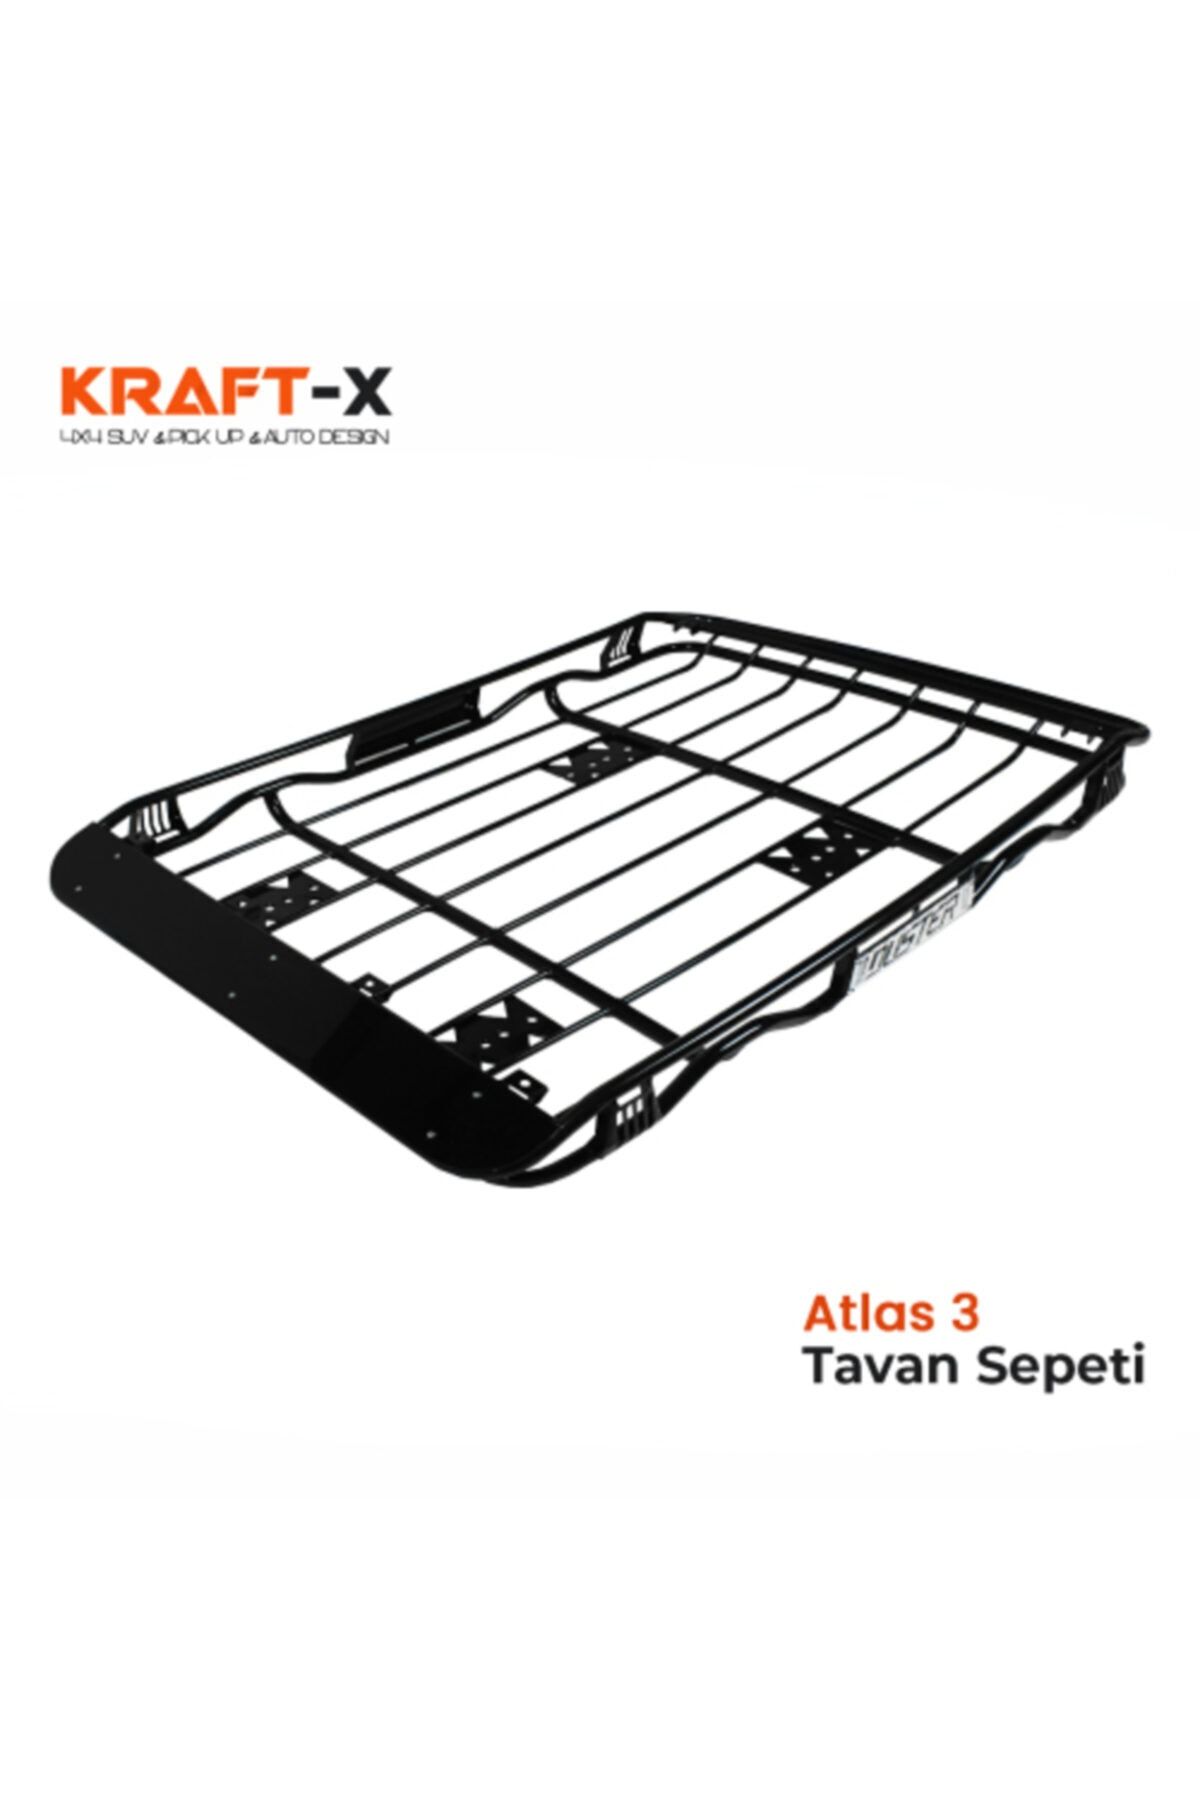 Kraftx Atlas 3 Tavan Sepeti